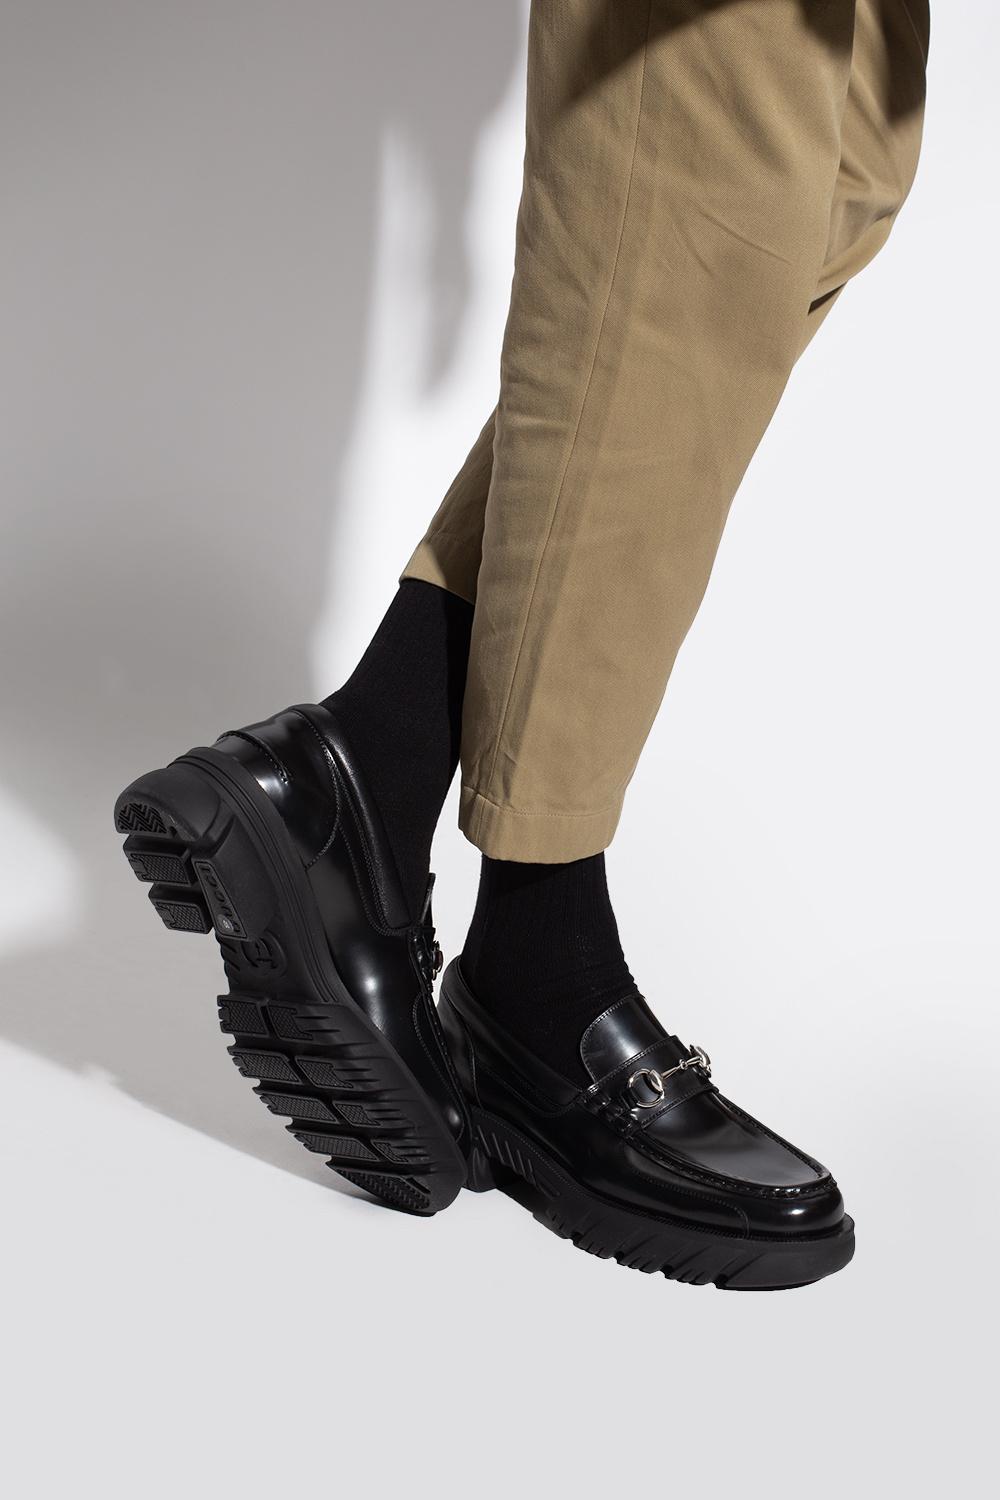 Primitiv Kritik udledning Gucci Leather Loafers in Black for Men | Lyst